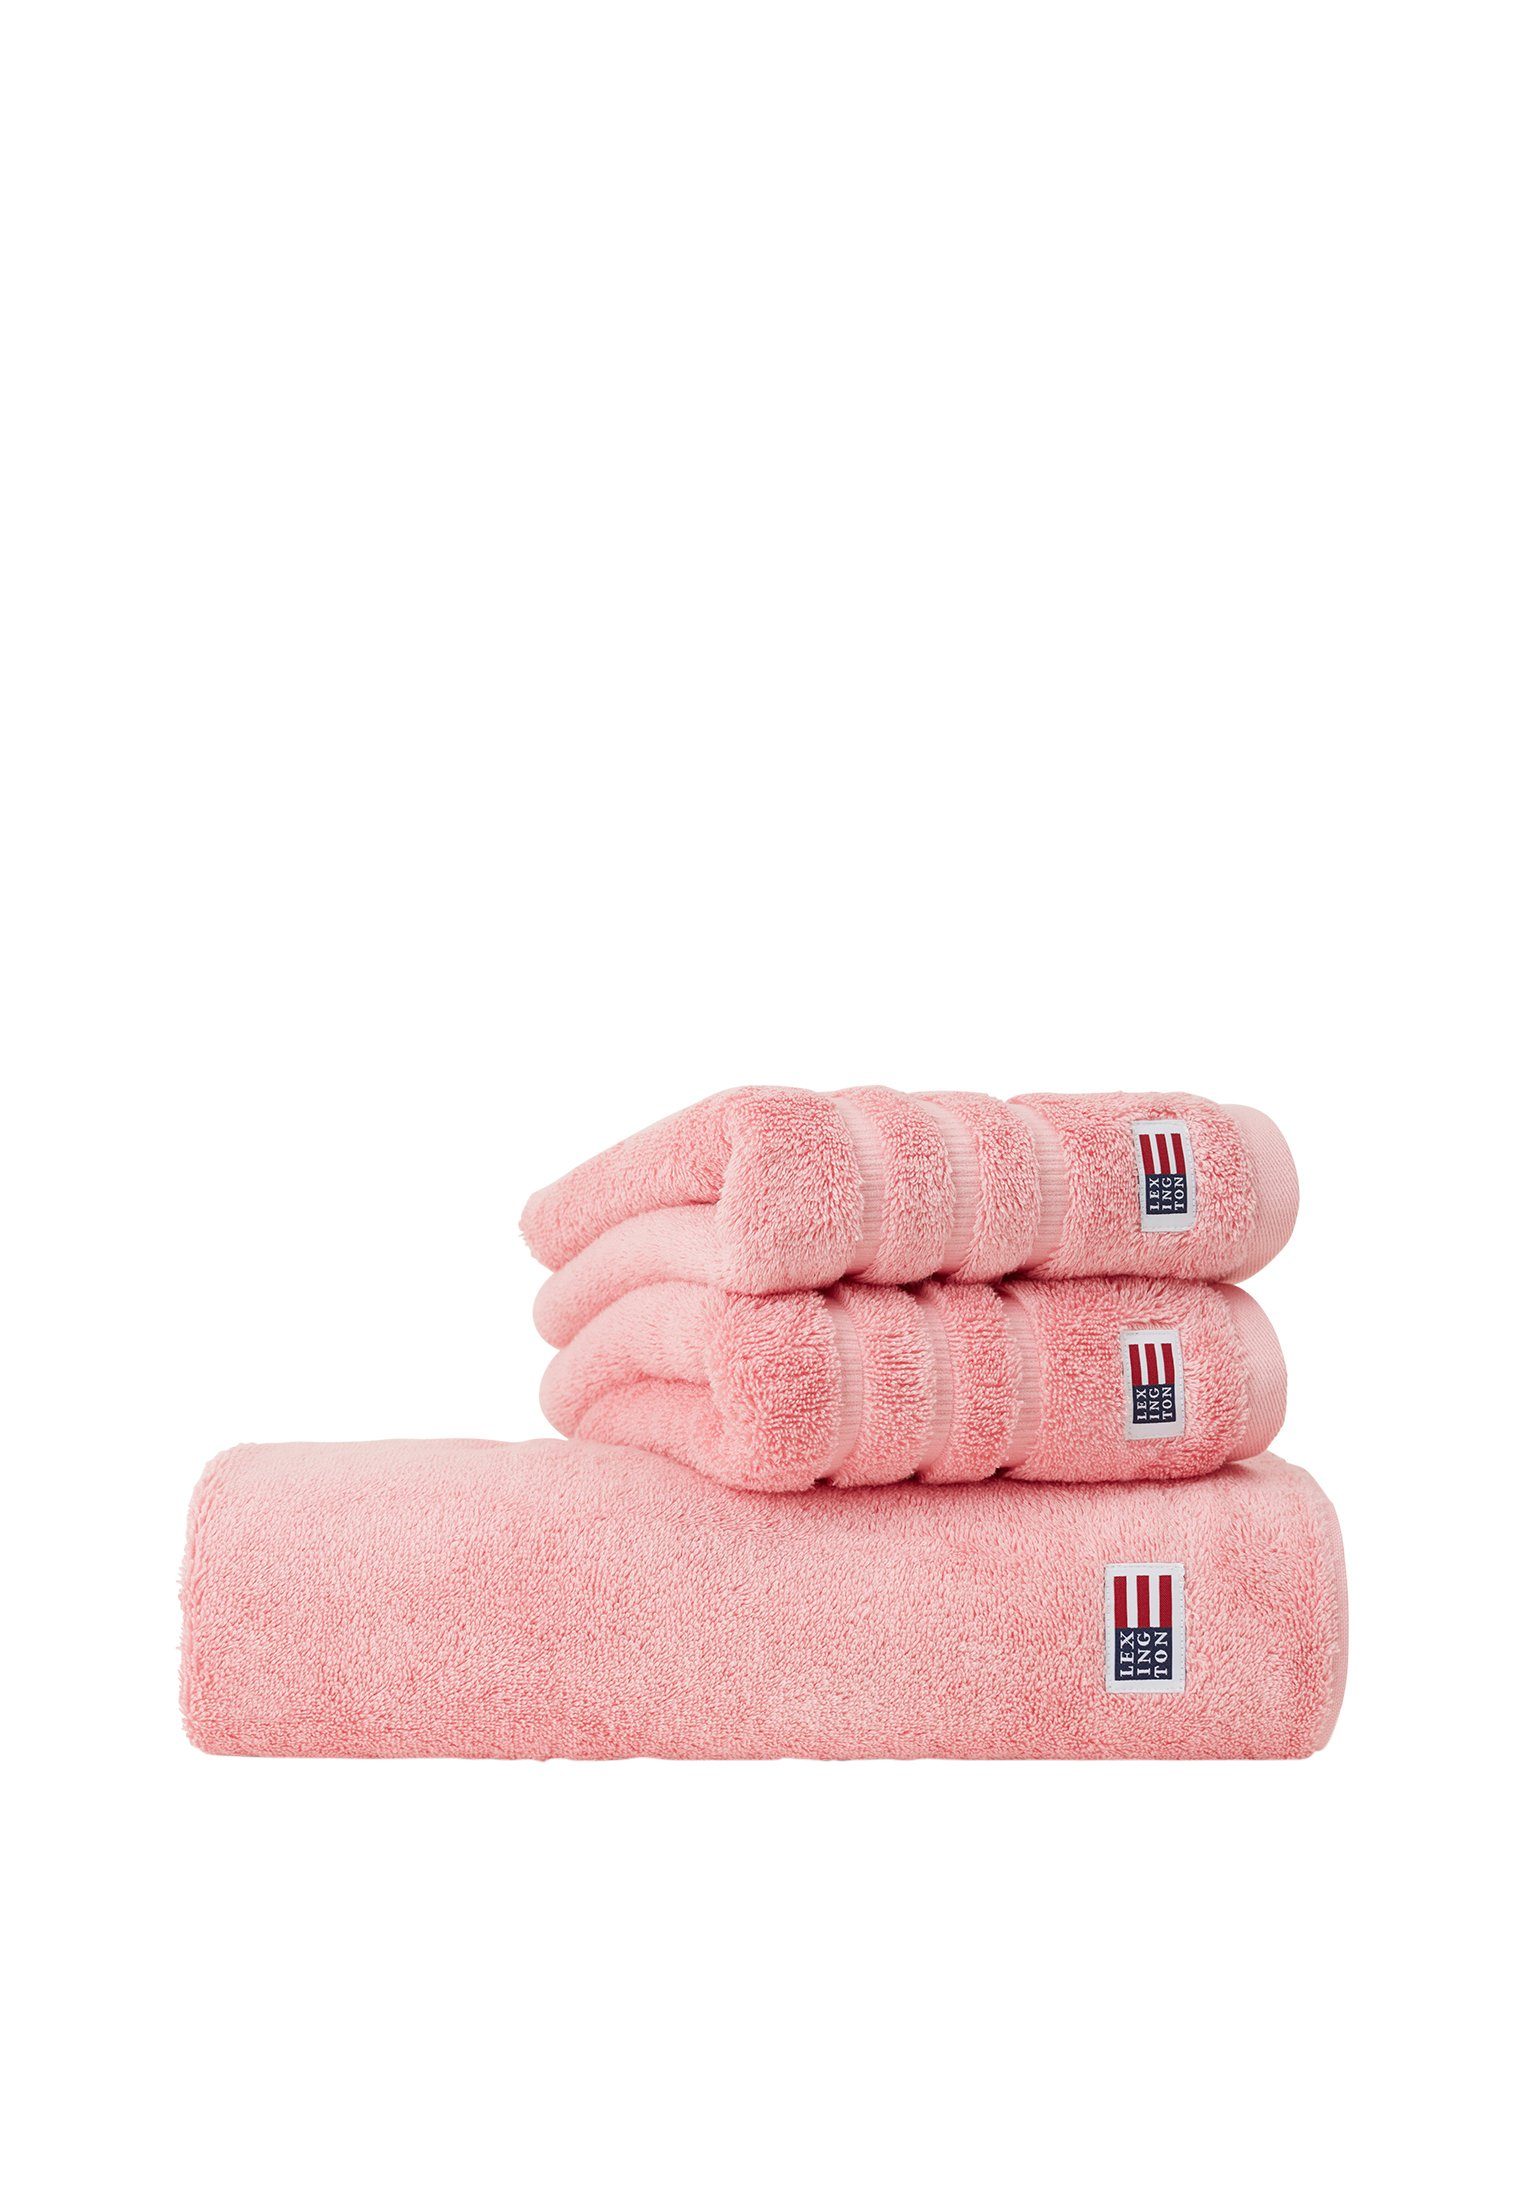 Vortrefflich Lexington Handtuch Original Towel petunia pink